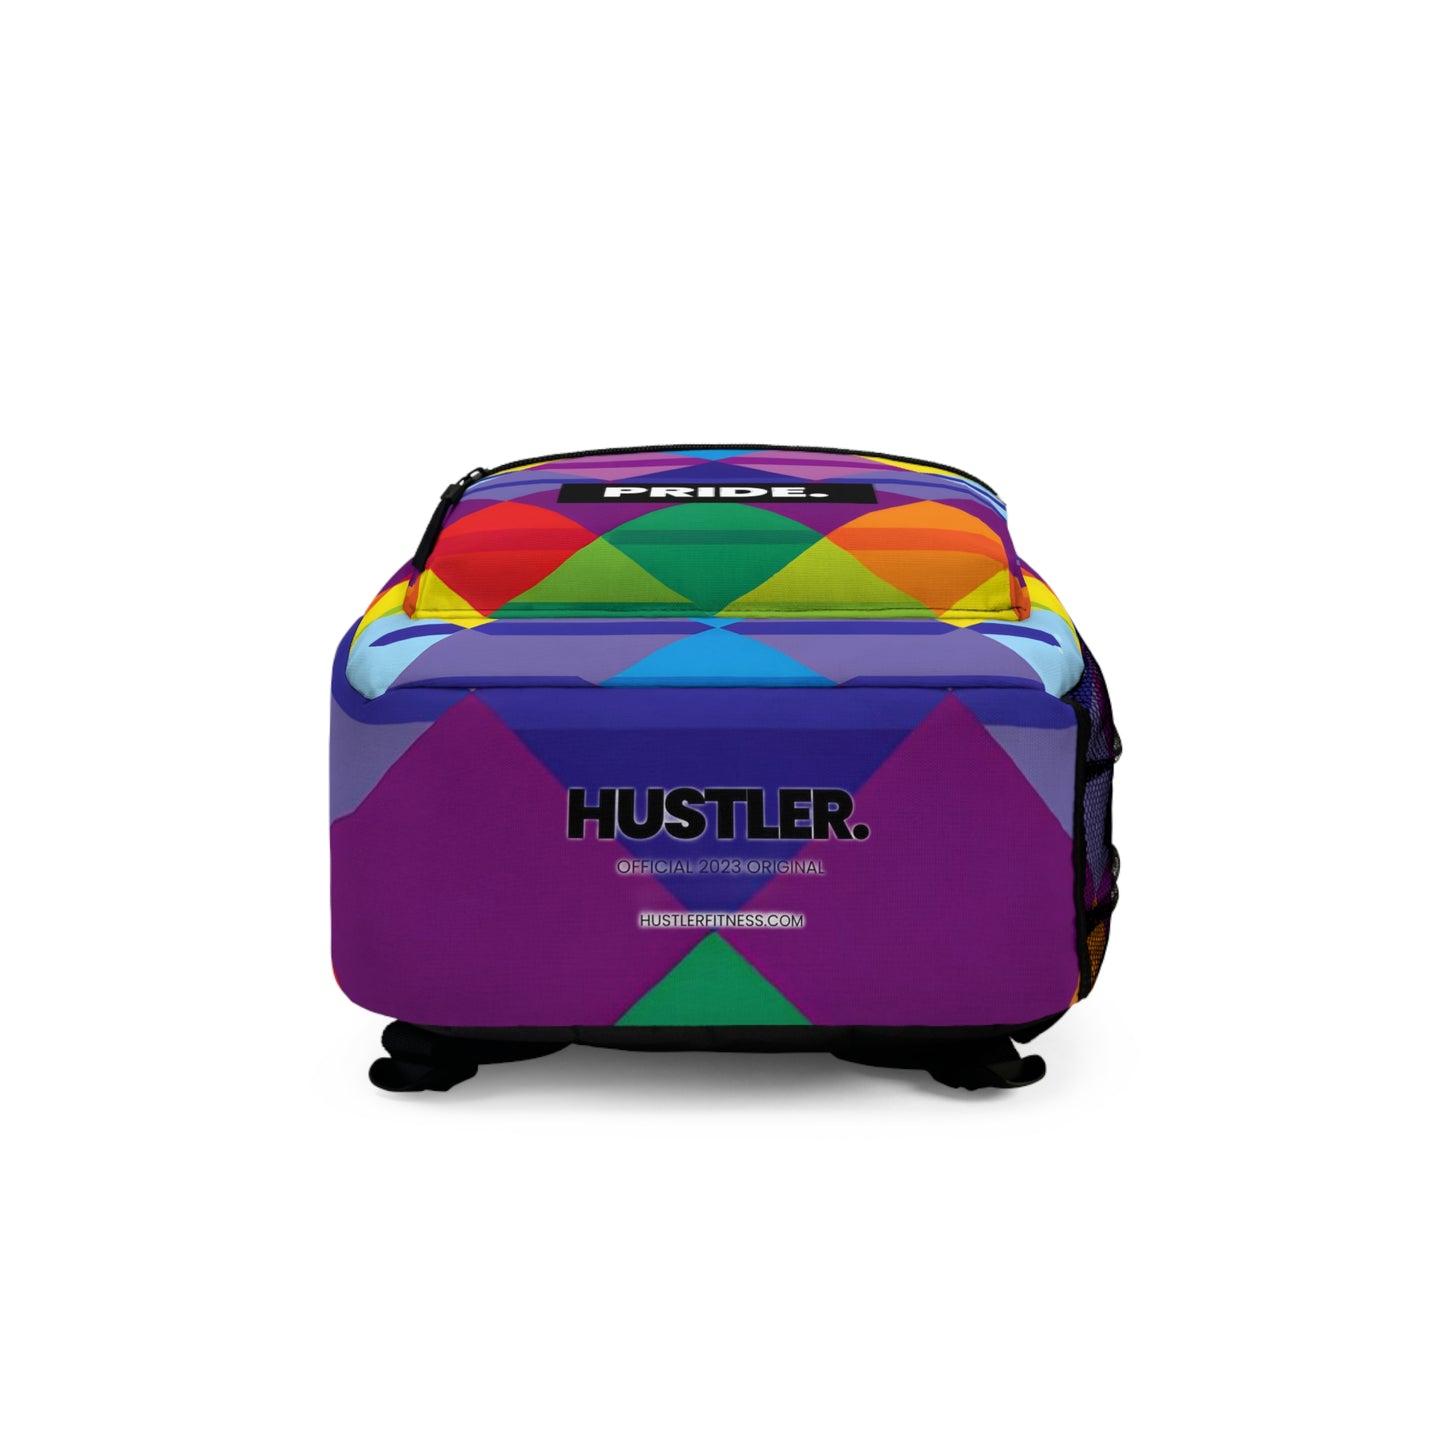 MissTronic - Hustler Pride Backpack